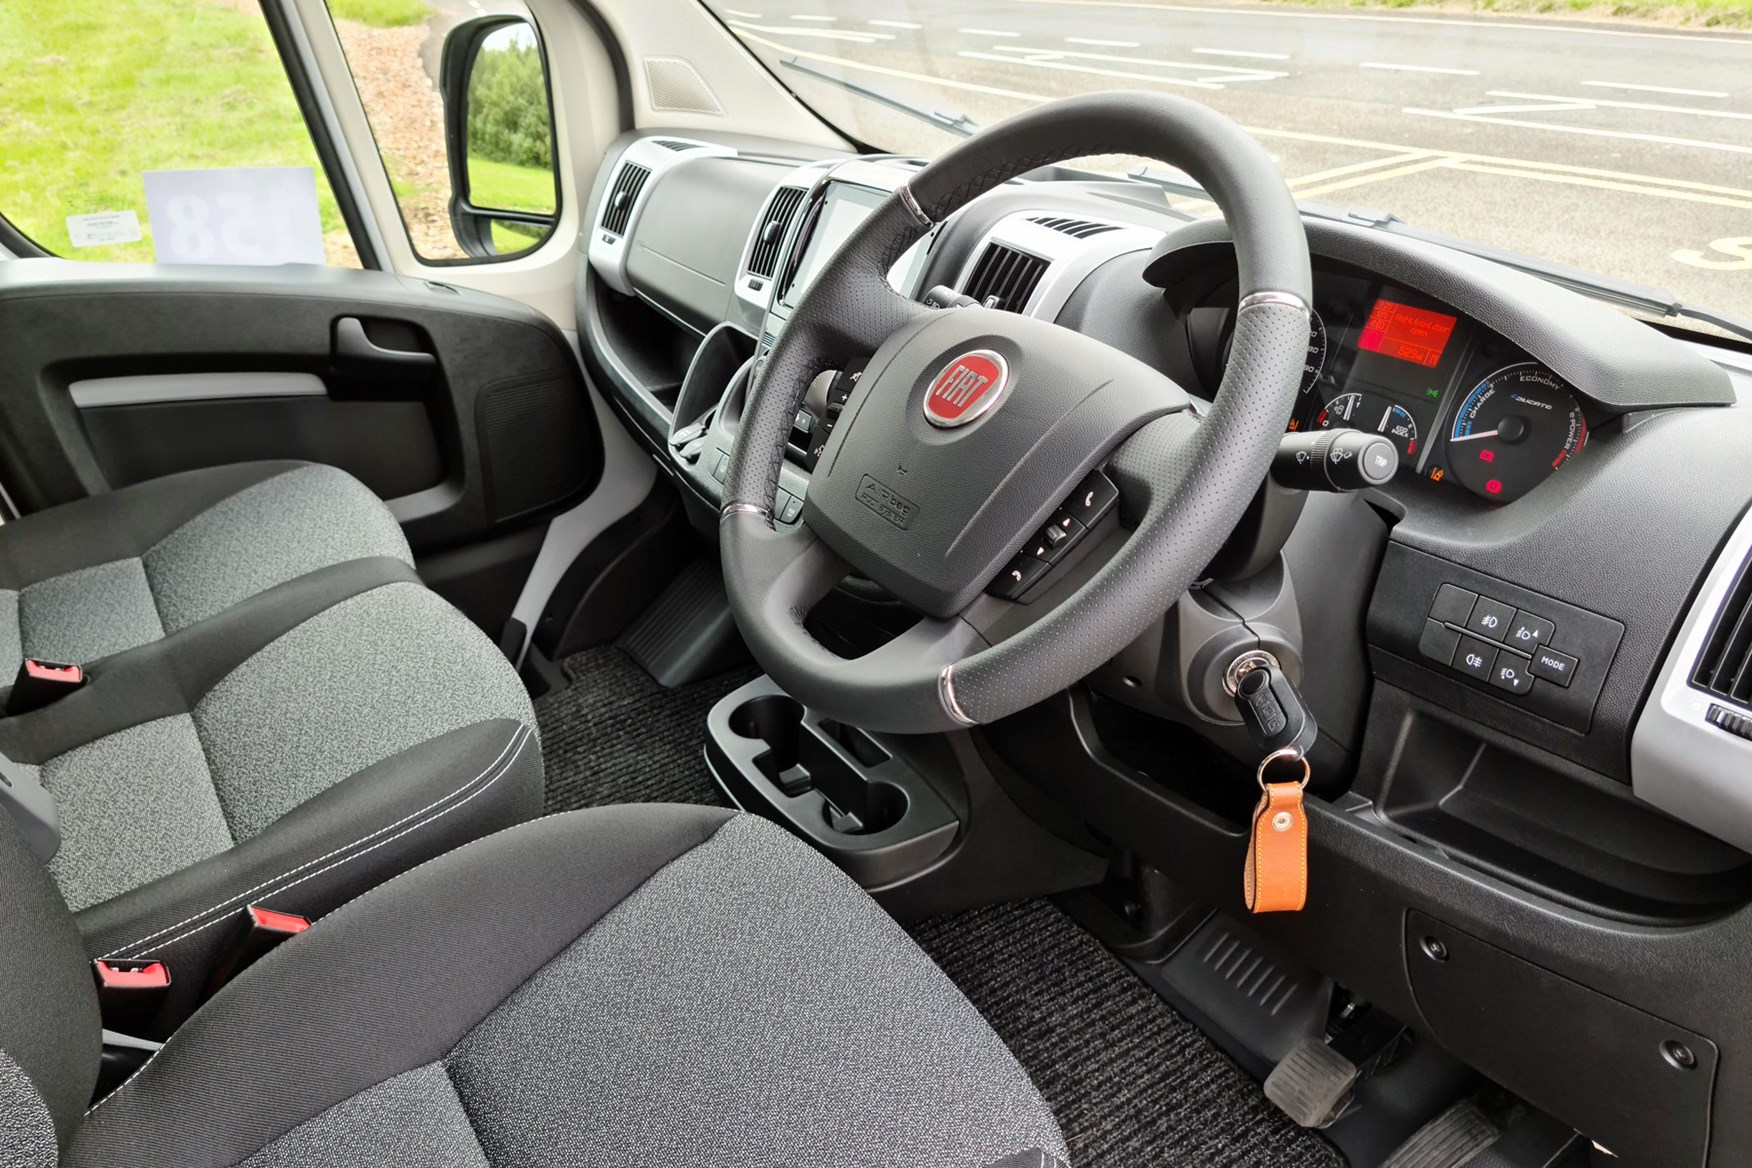 Fiat E-Ducato review - cab interior, dashboard, steering wheel